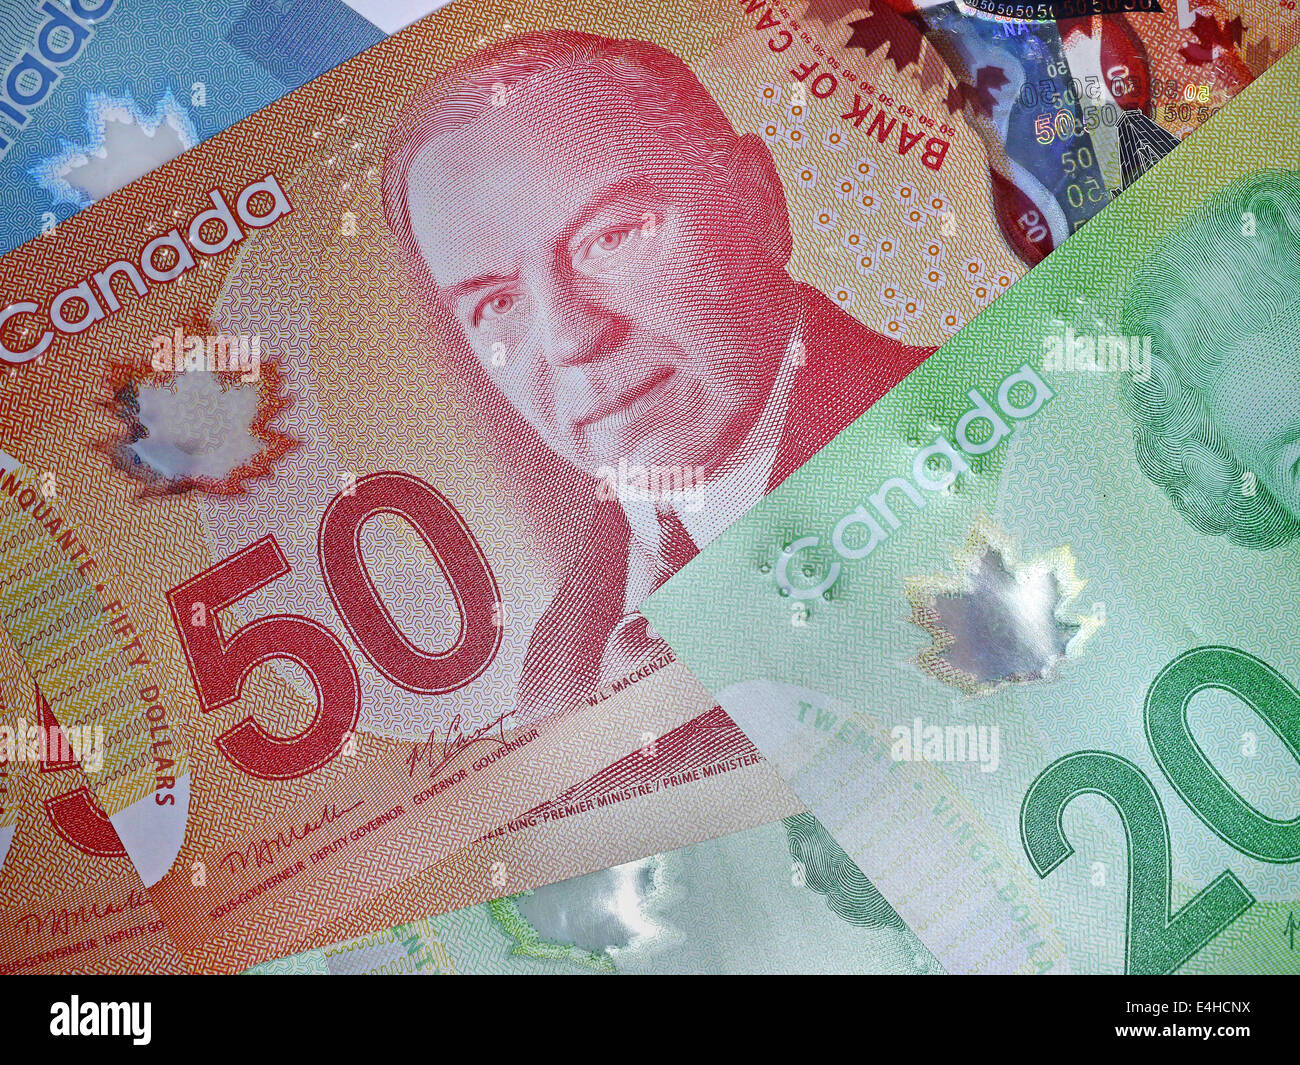 Monnaie canadienne fait de la polymère au lieu de papier Banque D'Images